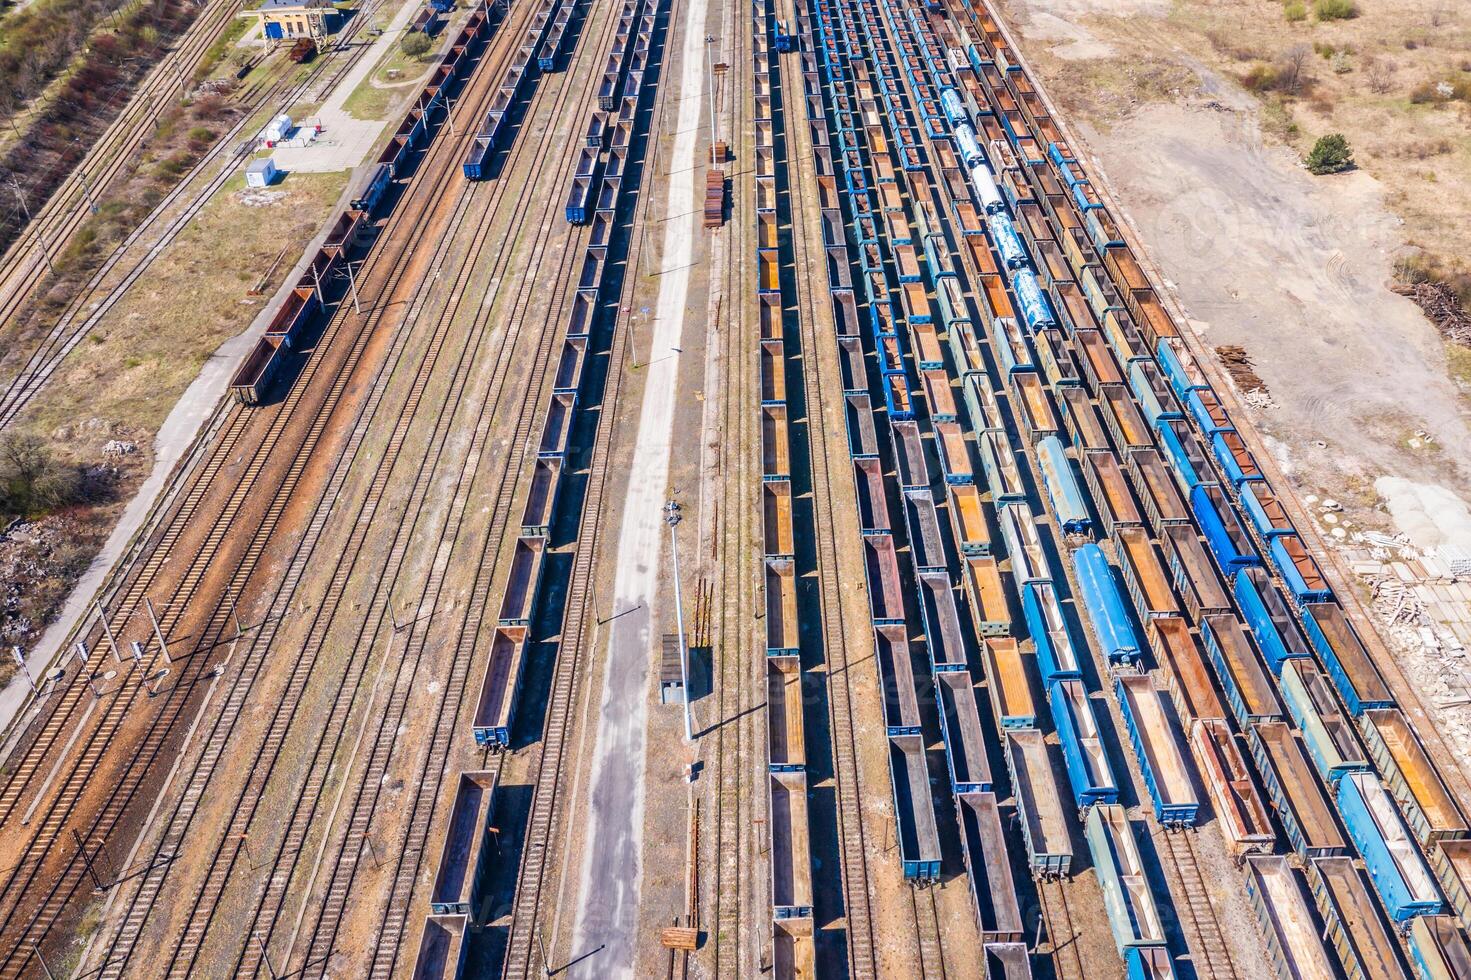 Ladung Züge. Antenne Aussicht von bunt Fracht Züge auf das Eisenbahn Bahnhof. Wagen mit Waren auf Eisenbahn.Antenne Aussicht foto